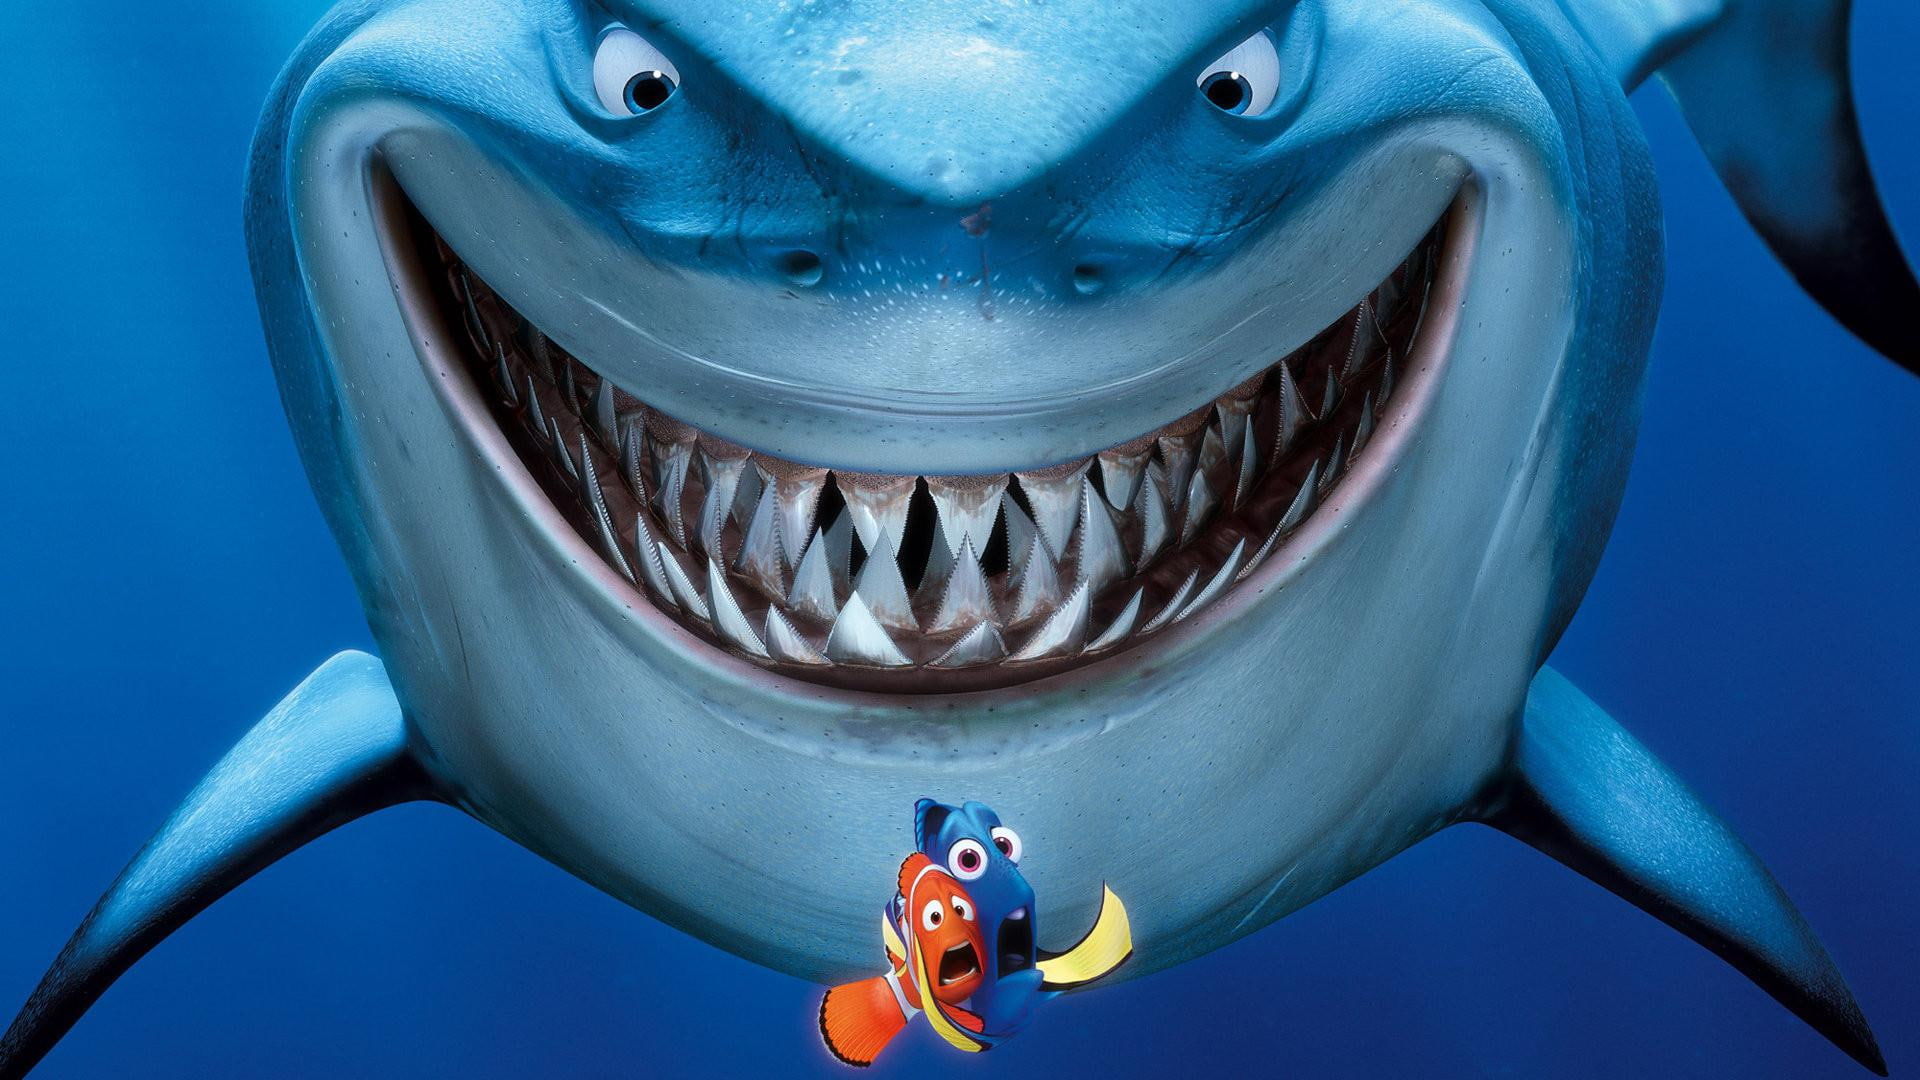 Finding Nemo, disney pixar finding nemo characters, pixar's movies